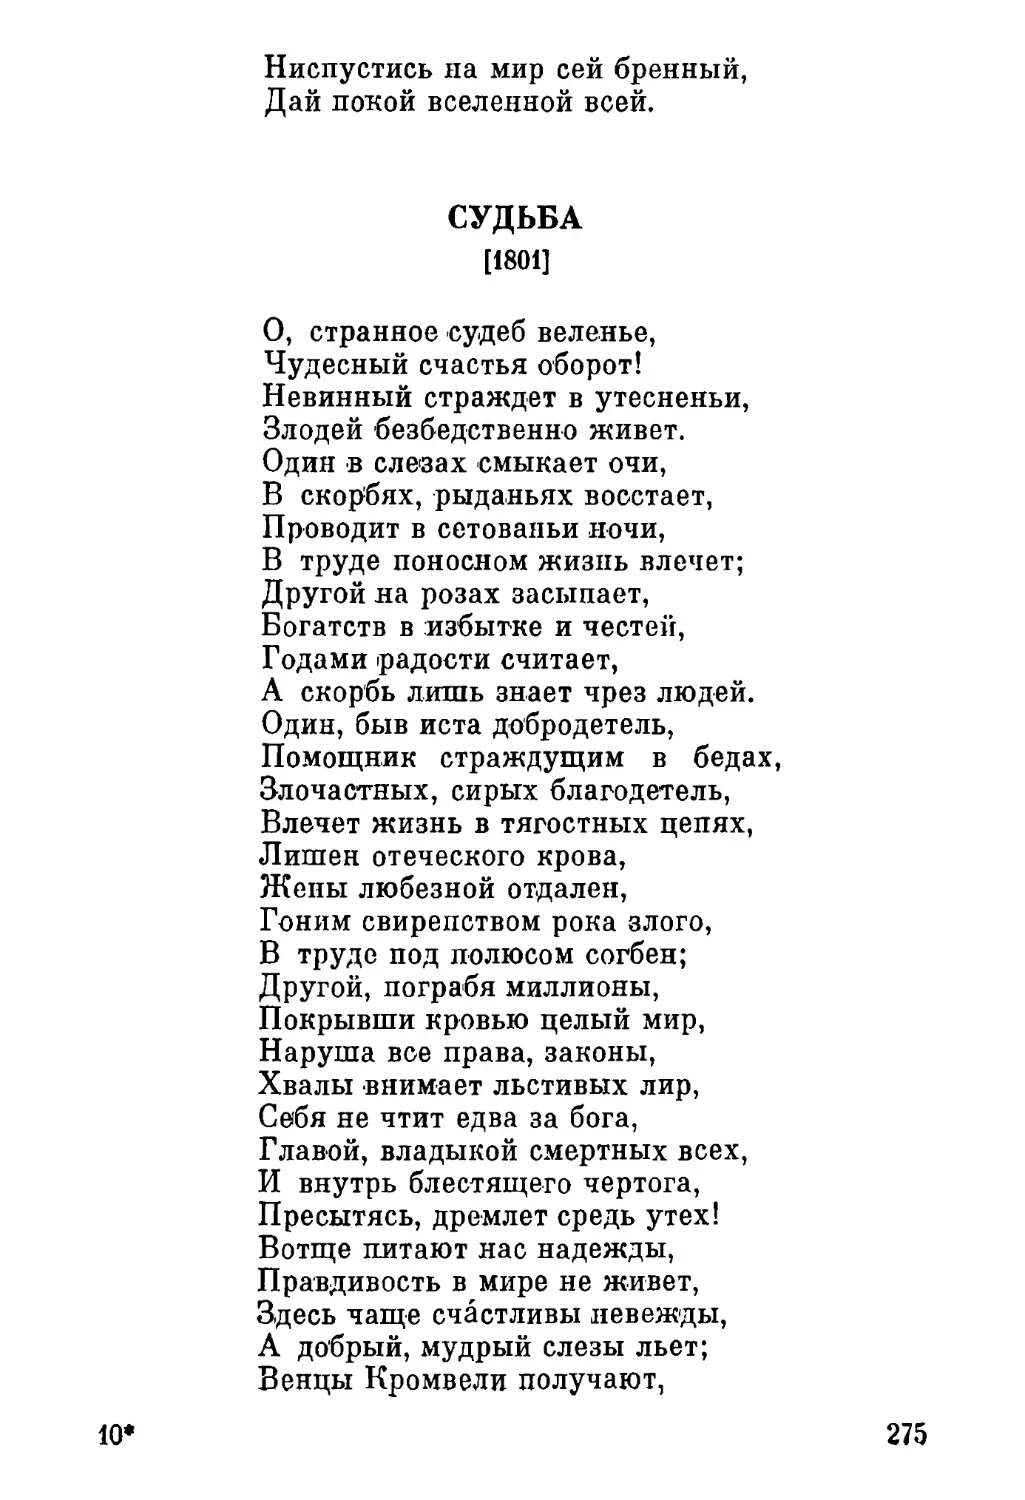 Судьба [1801]